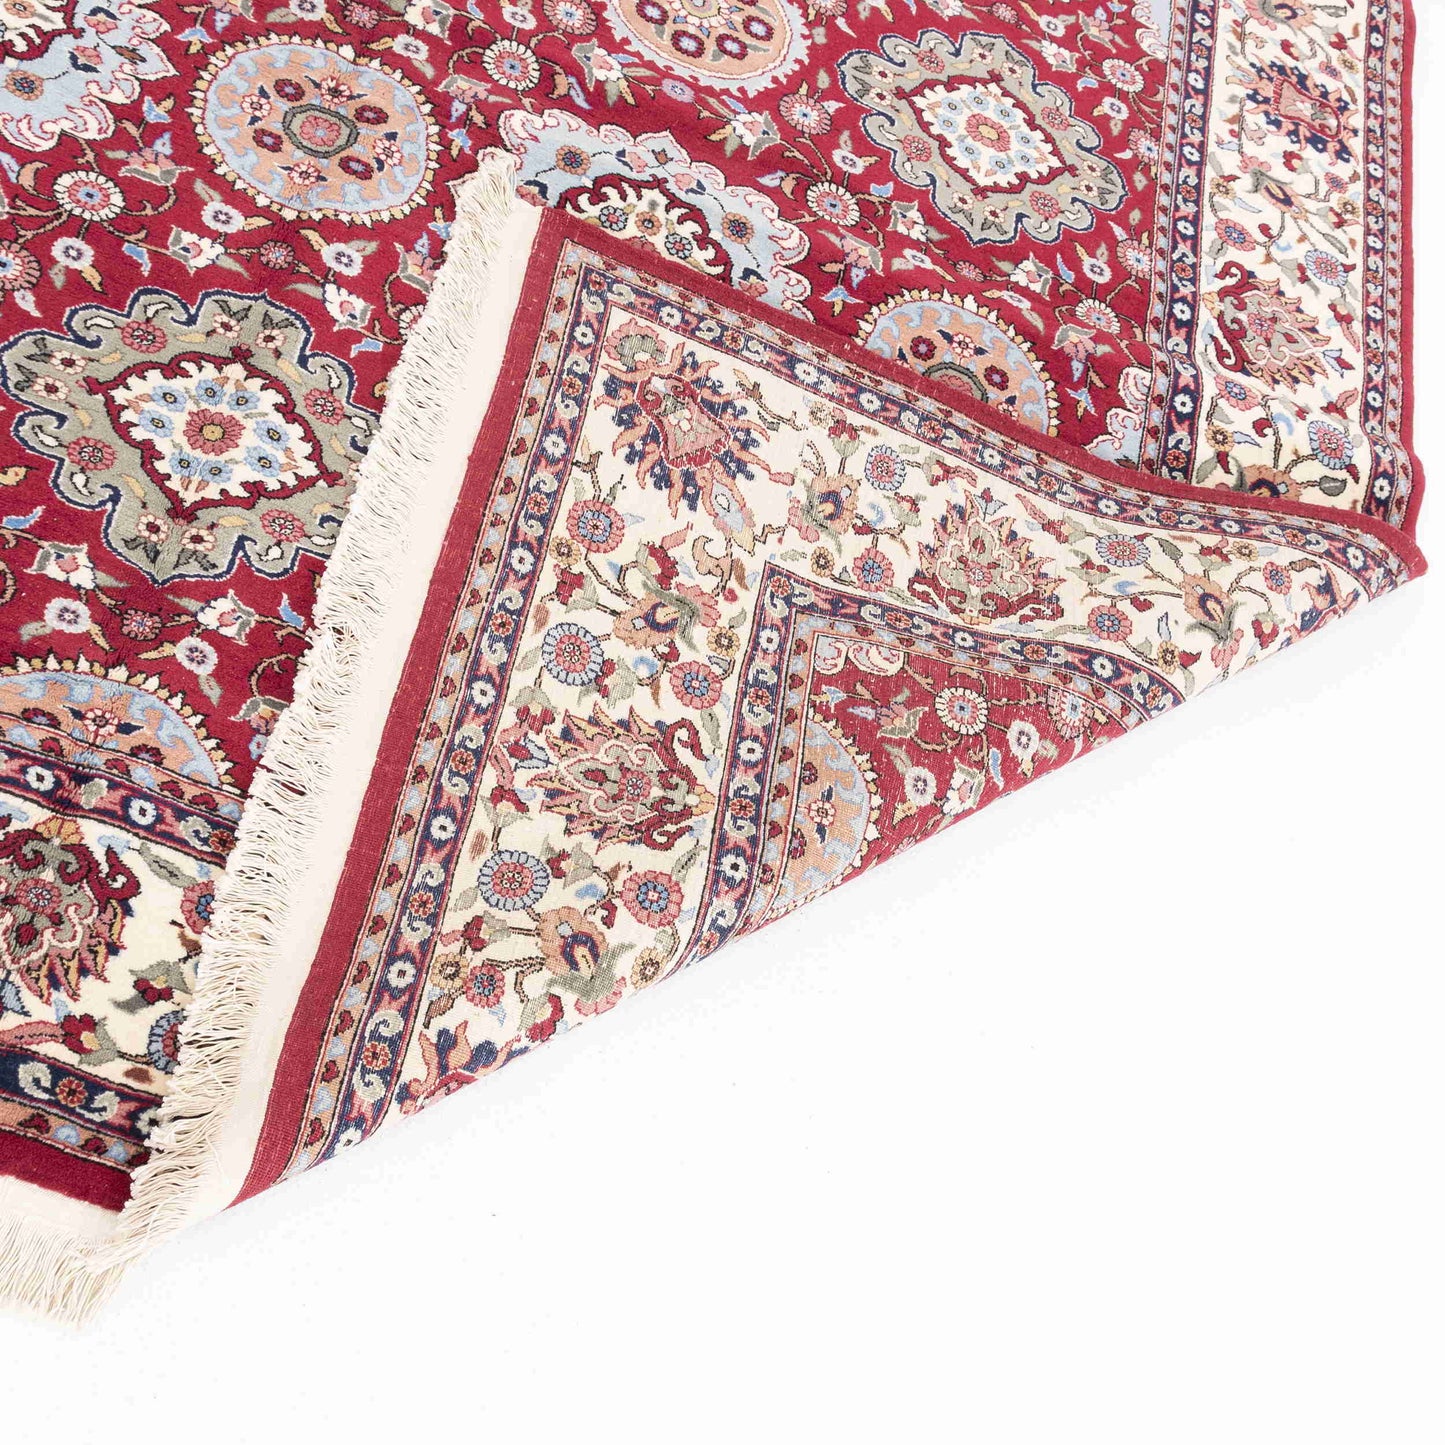 Oriental Rug Hereke Handmade Wool On Cotton 221 X 333 Cm - 7' 4'' X 11' Red C014 ER23